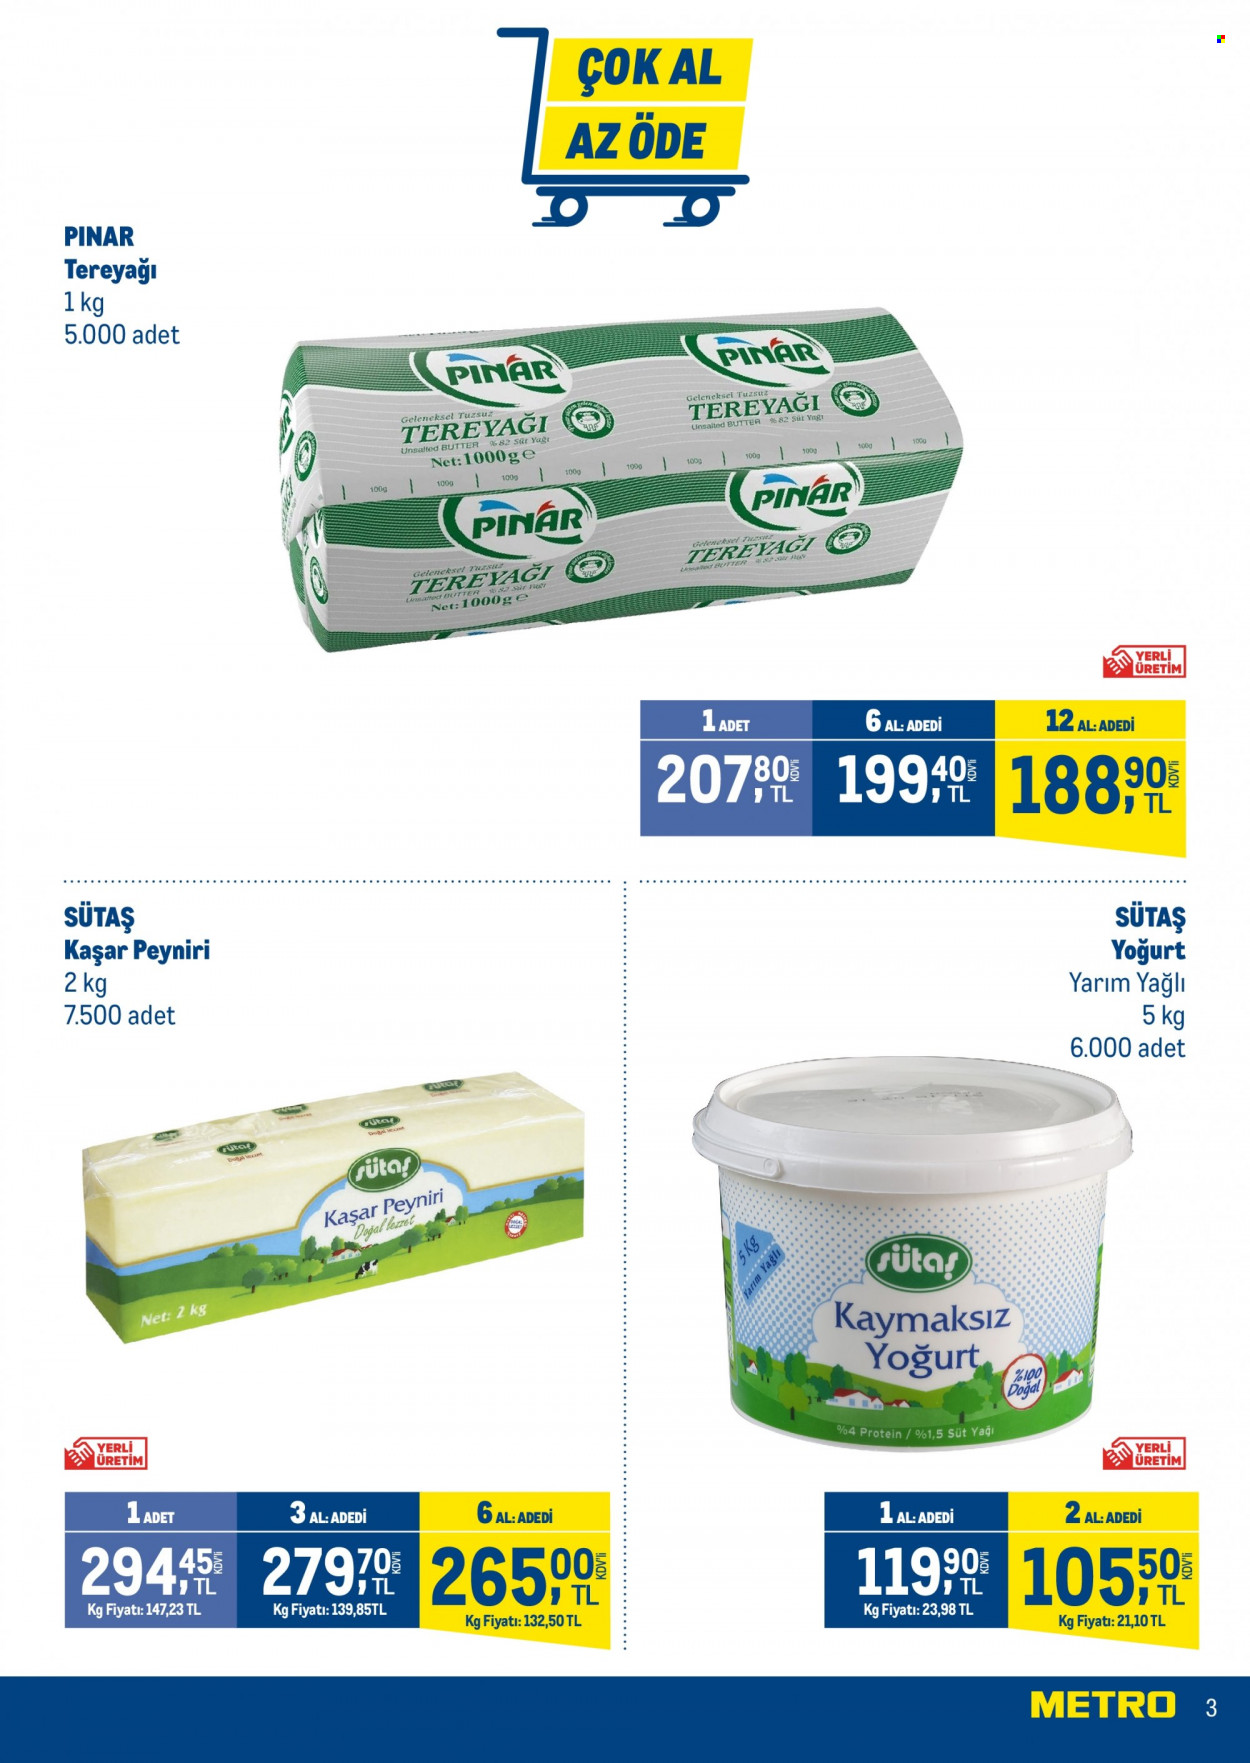 thumbnail - Metro aktüel ürünler, broşür  - 2.1.2023 - 2.28.2023 - Satıştaki ürünler - Pınar, Sütas, kaşar peyniri, yoğurt, süt, tereyağı. Sayfa 3.